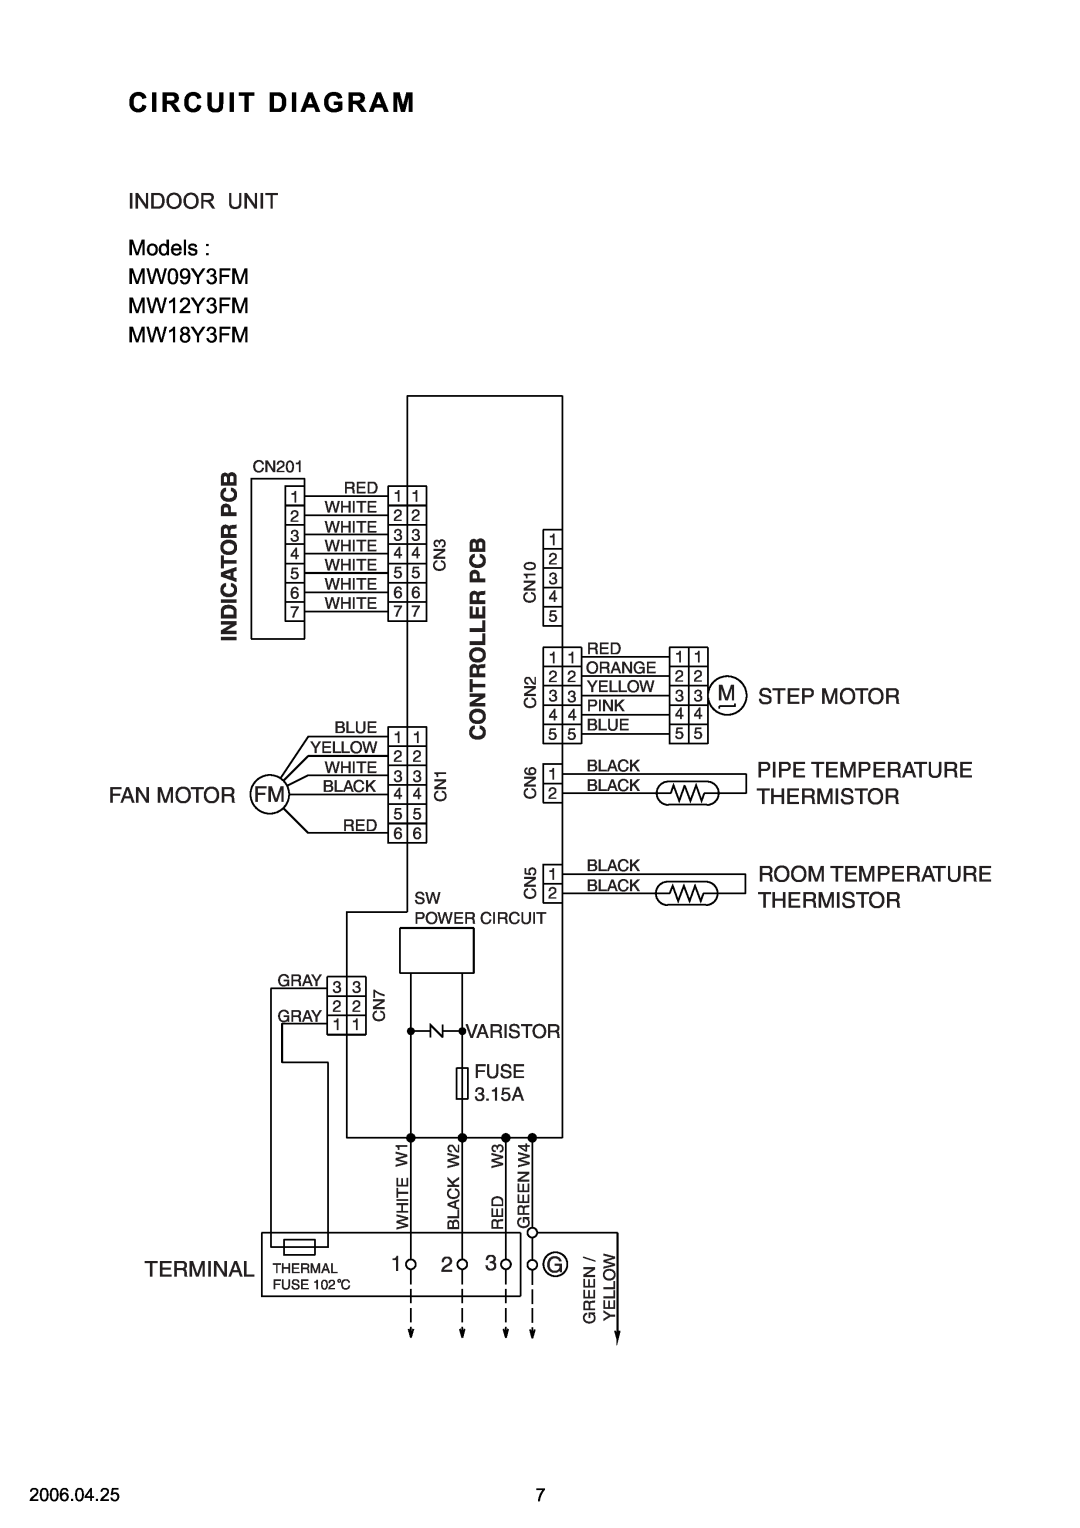 Friedrich R410A Circuit Diagram, Models MW09Y3FM MW12Y3FM MW18Y3FM, Fan Motor Fm, M Step Motor, Thermistor, Varistor 